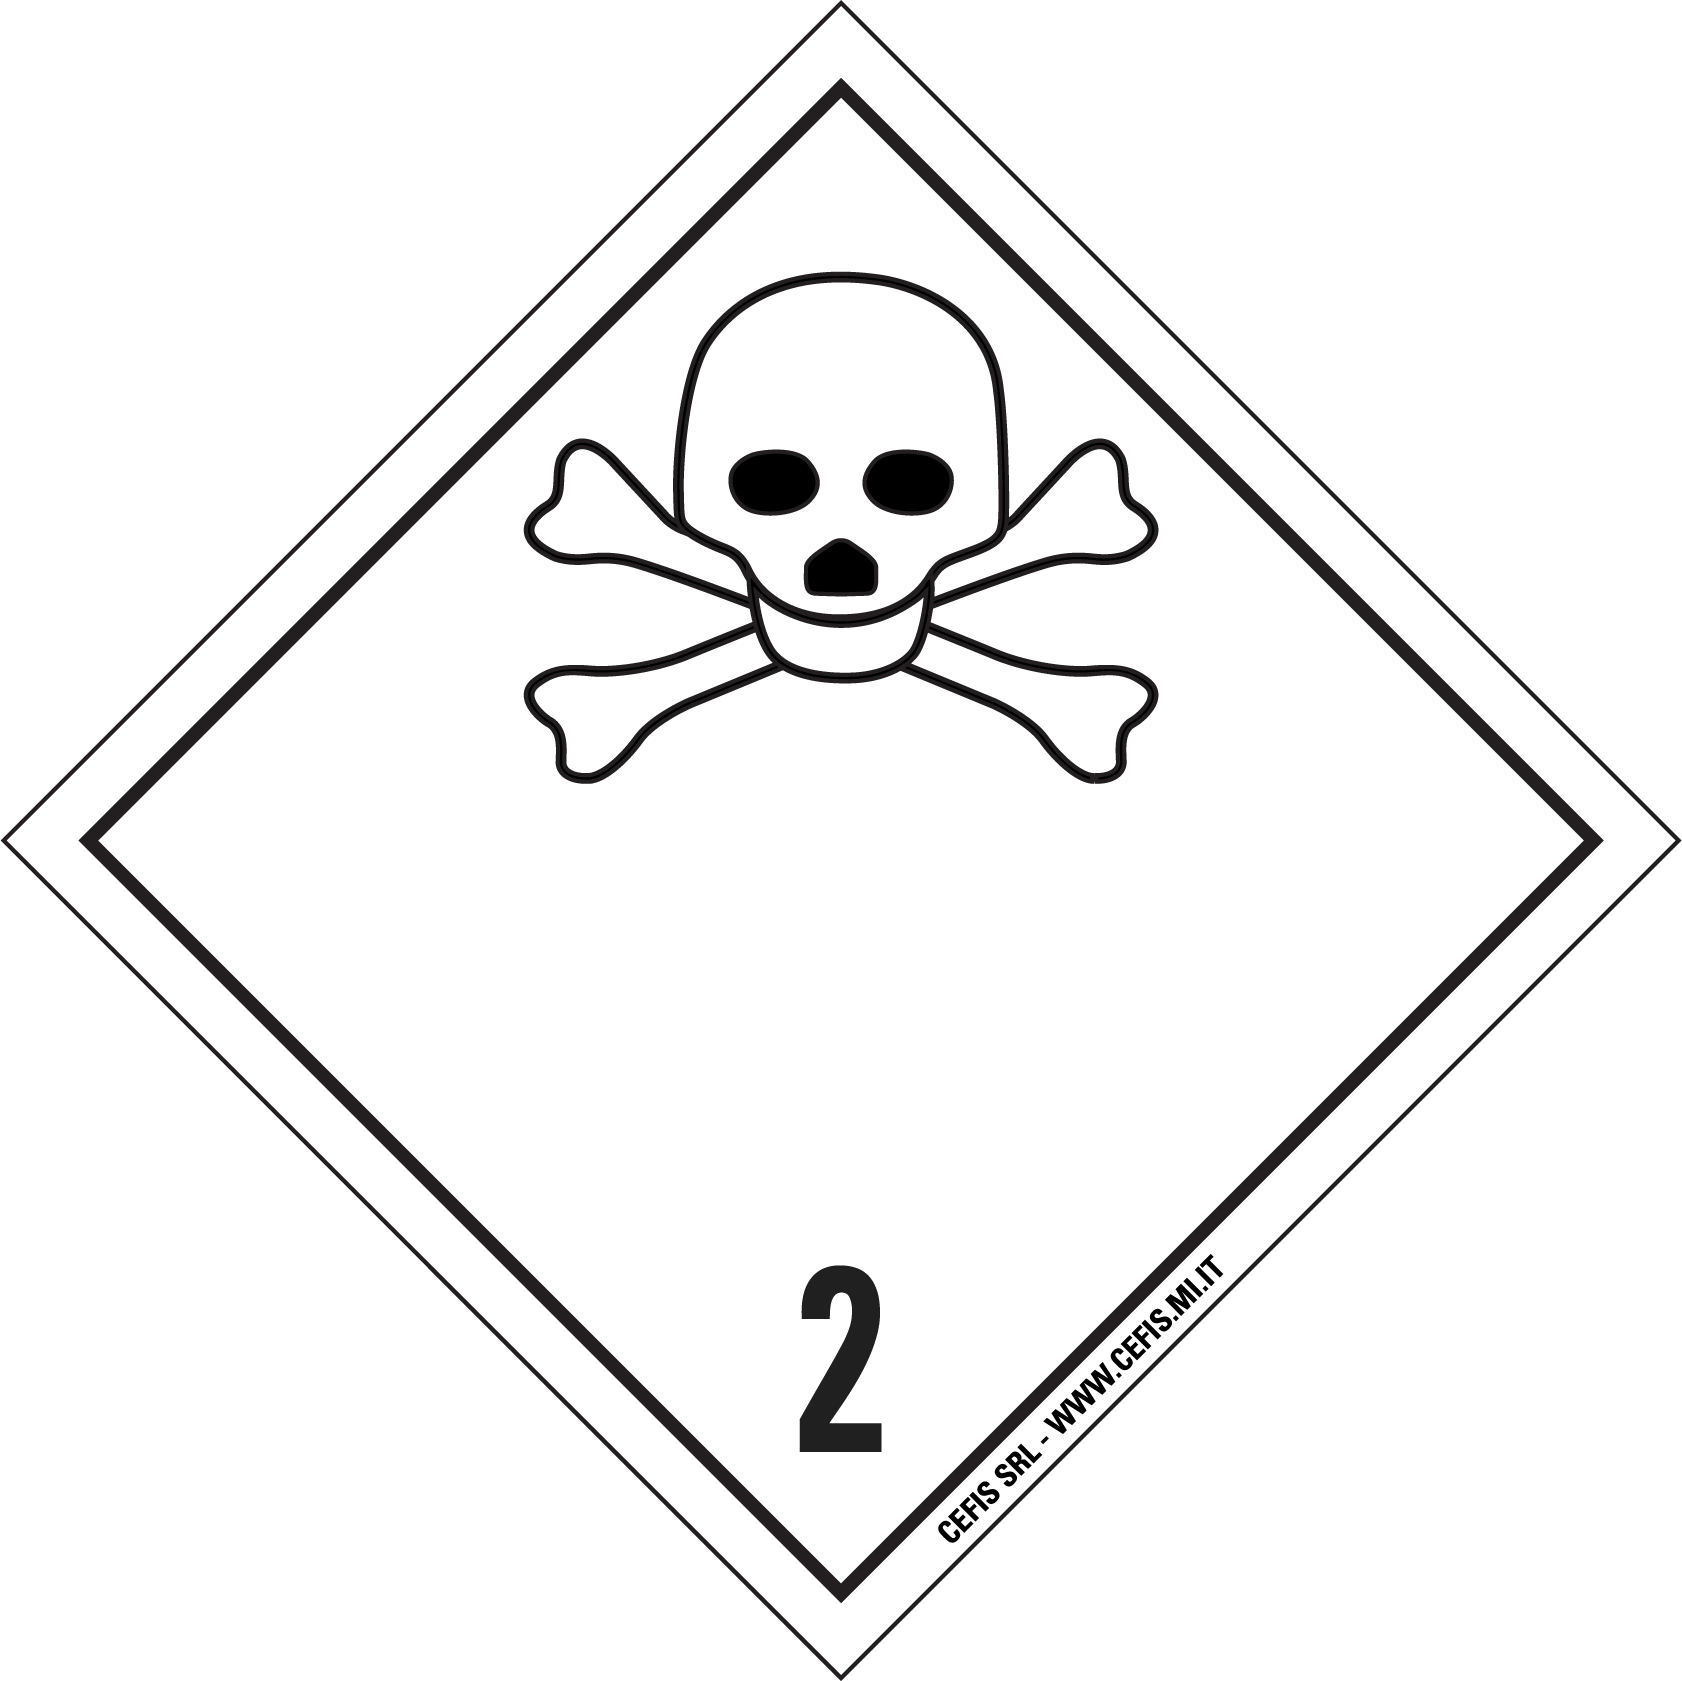 Etichetta merci pericolose classe 2.3 Toxic gas